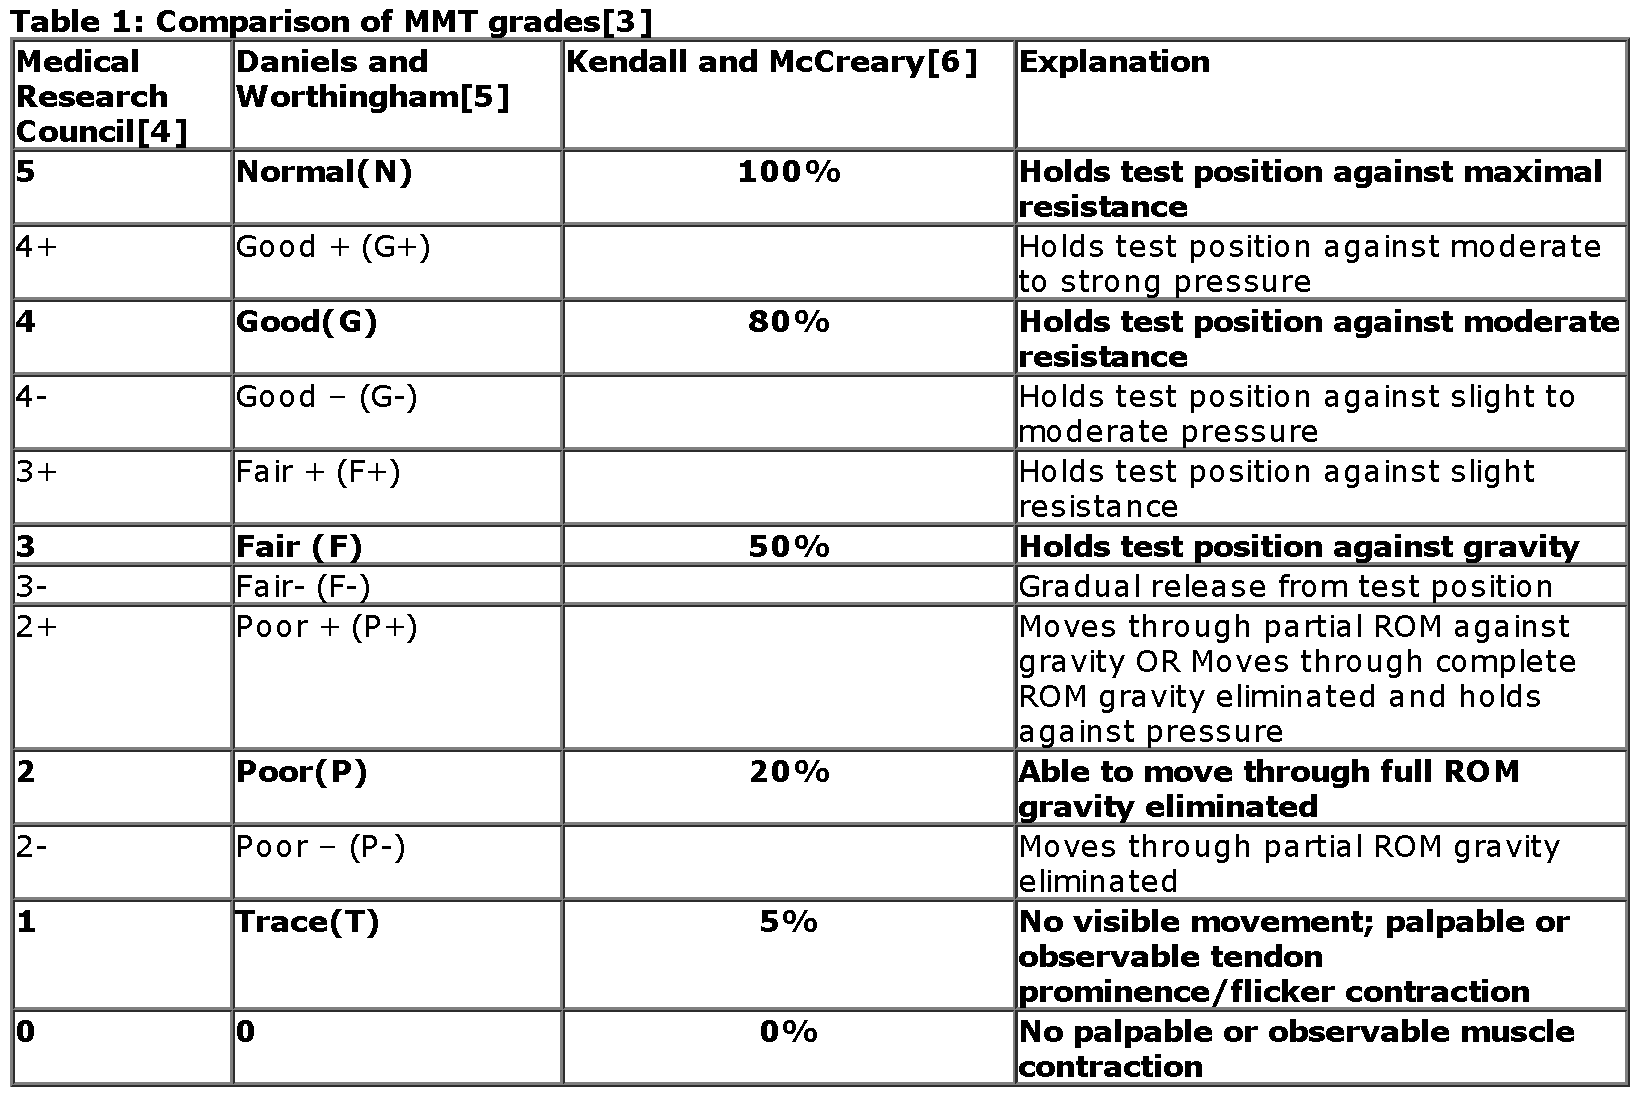 MMT Grading Comparison Table